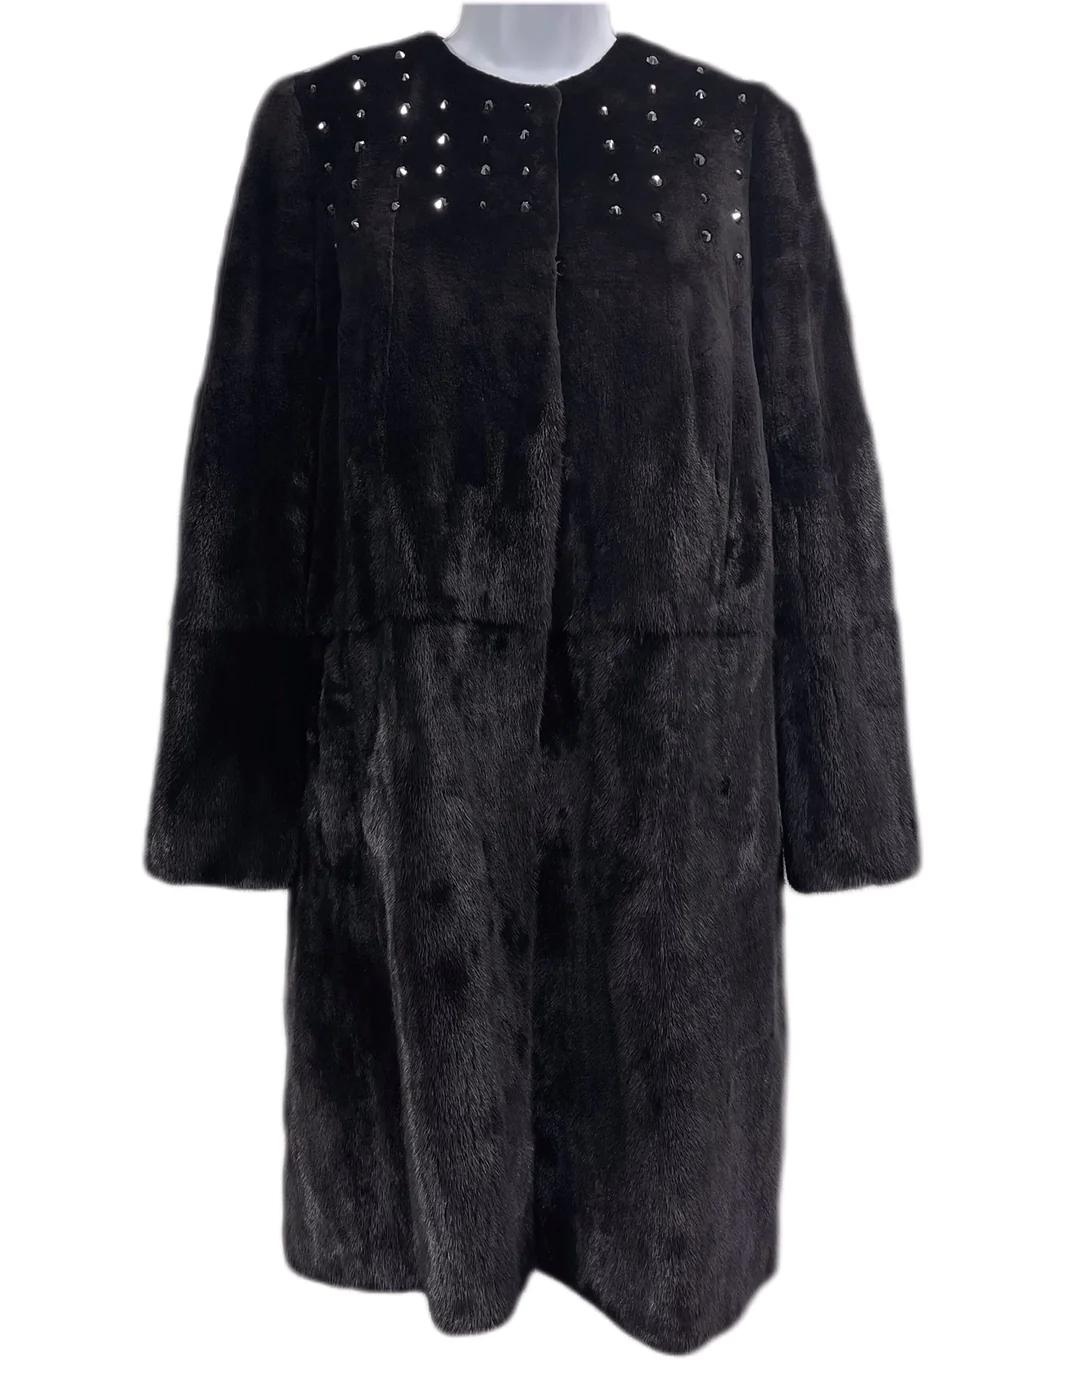 Christian Dior Schwarzer Nerz-Mantel

Dieser schwarze Nerzmantel von Christian Dior ist ein atemberaubendes und elegantes Stück, das sich für jeden Anlass eignet. Dieser Mantel aus hochwertigem Nerzpelz ist sowohl stilvoll als auch luxuriös. Das